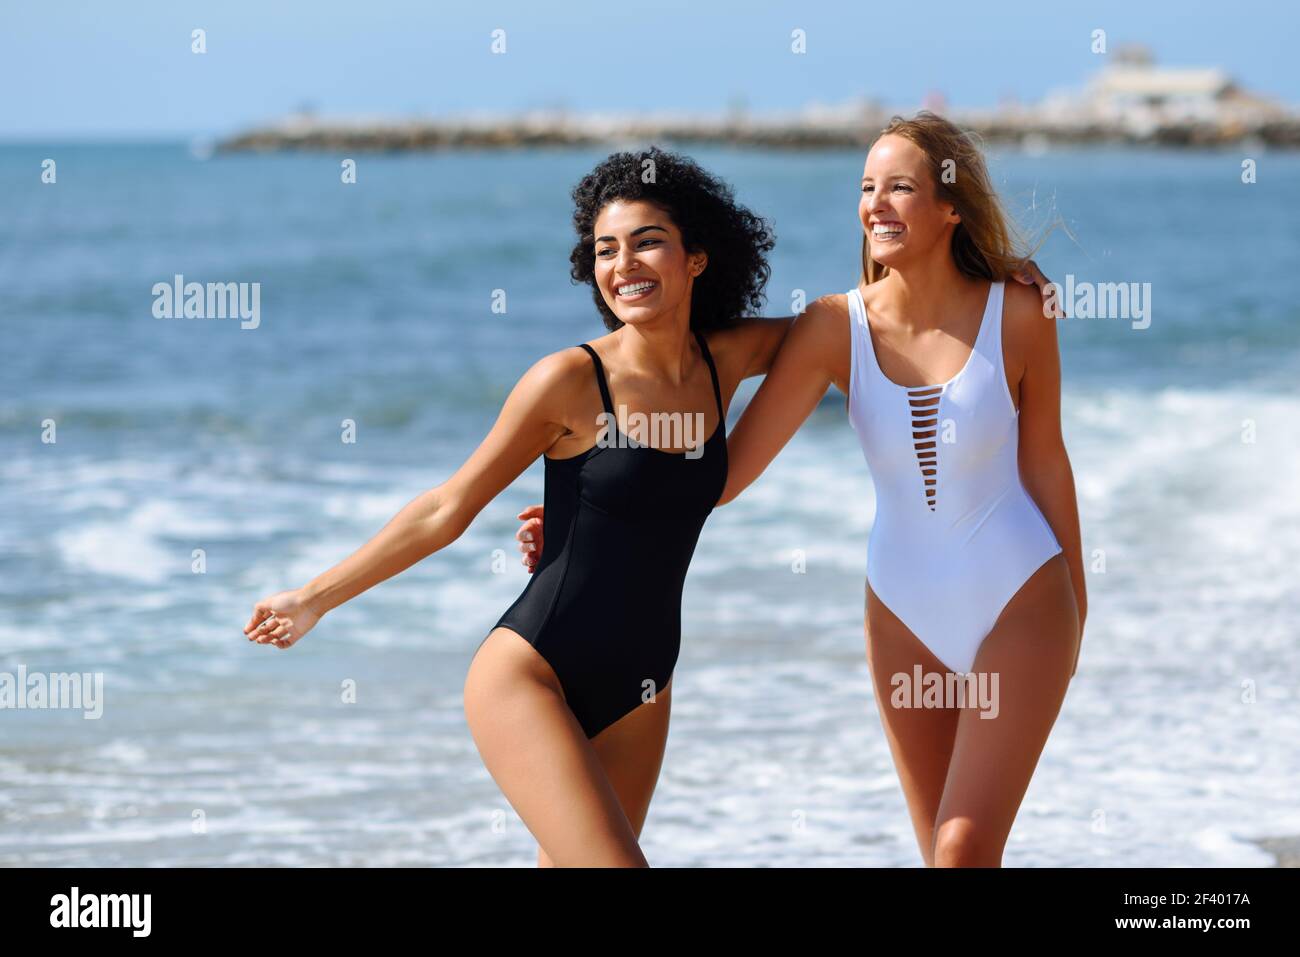 Dos mujeres jóvenes con cuerpos hermosos en traje de baño en un tropical. Dos mujeres jóvenes con hermosos en traje de baño en una tropical. Mujeres caucásicas y árabes graciosas